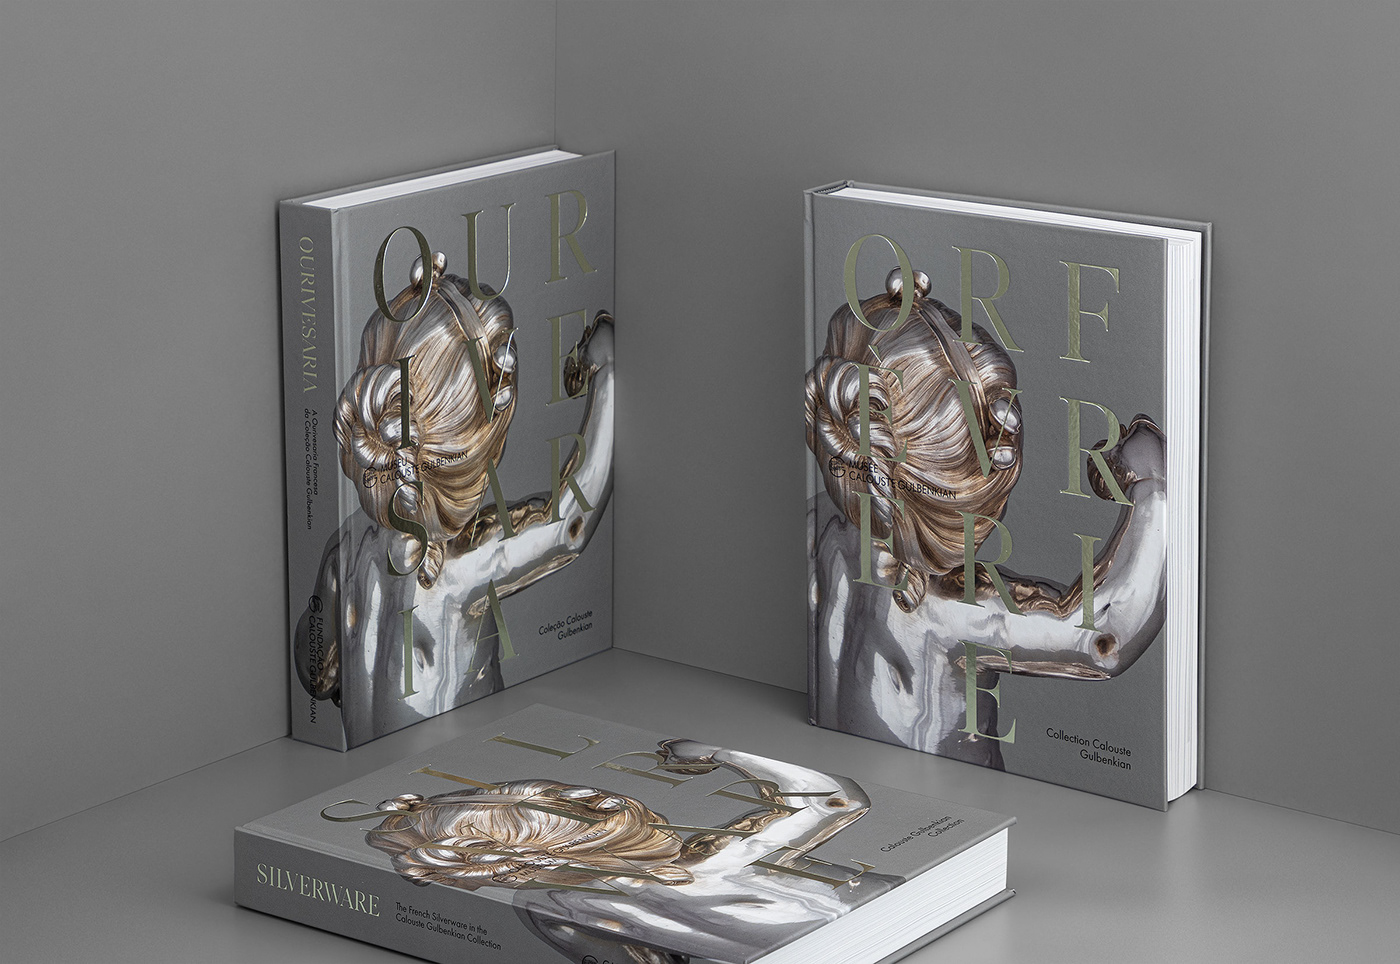 artbook artbook design book editorial editorial design  Gulbenkian hardcover InDesign Layout print